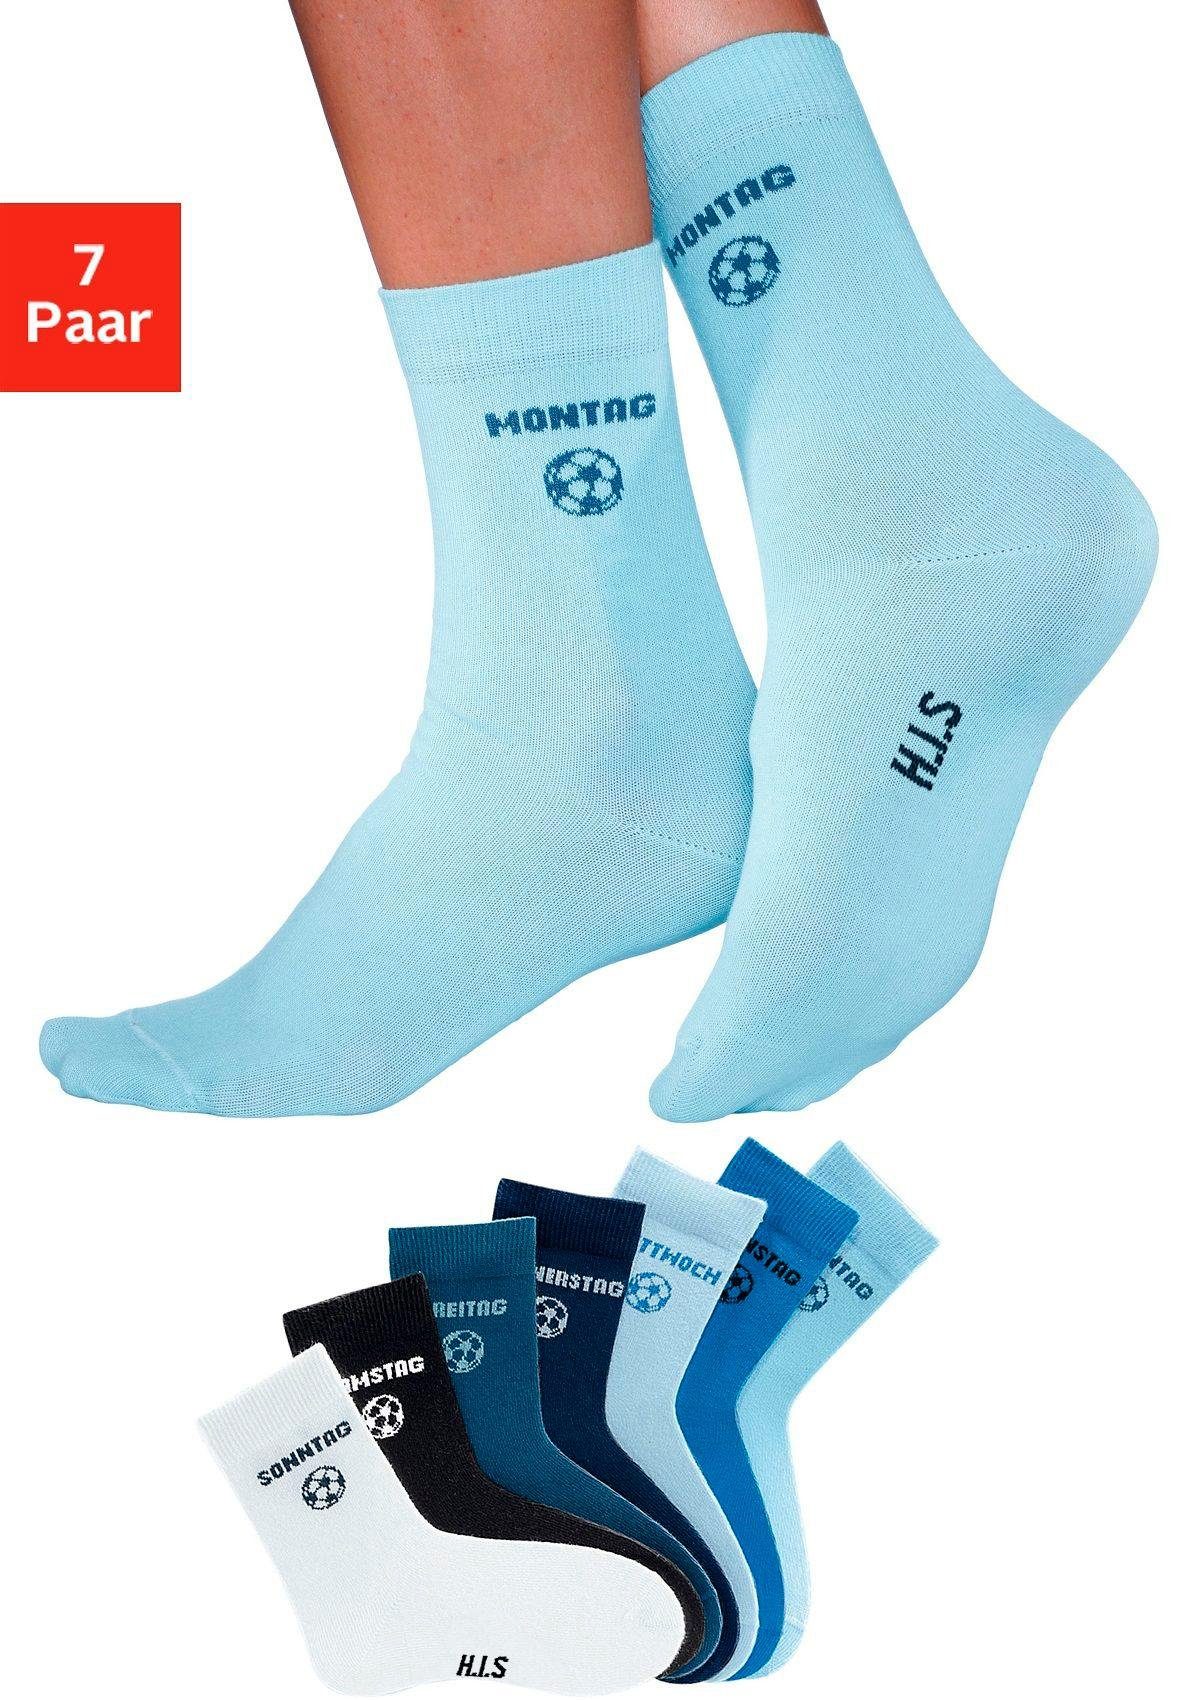 Kinder (7-Paar) für H.I.S mit Fußballmotiv Socken